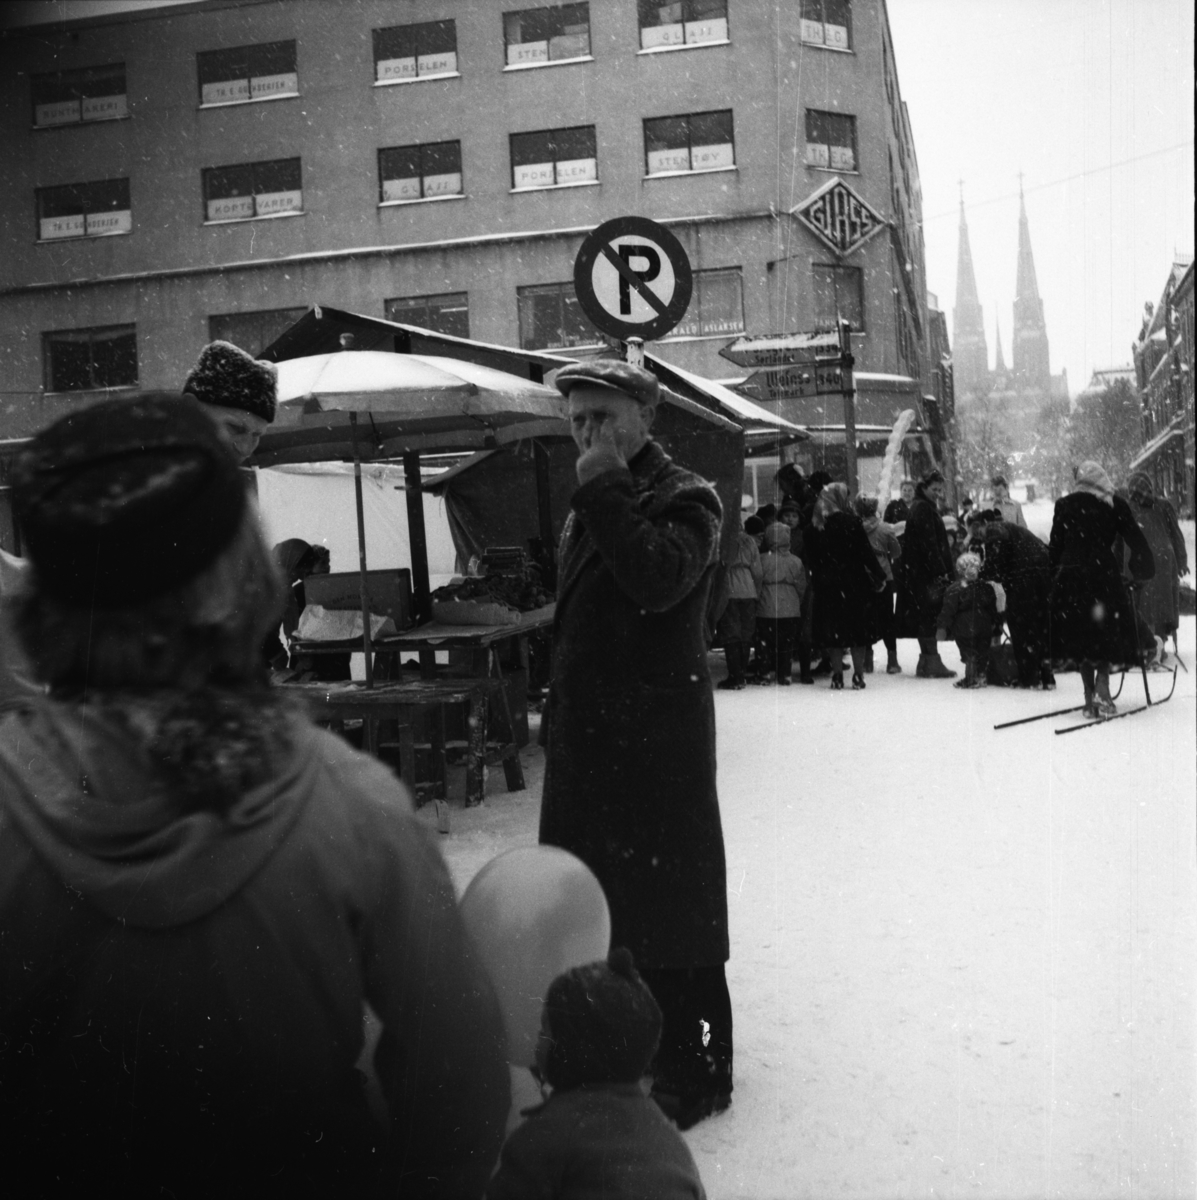 Vardens arkiv. "Marken åpnes"  23.02.1954